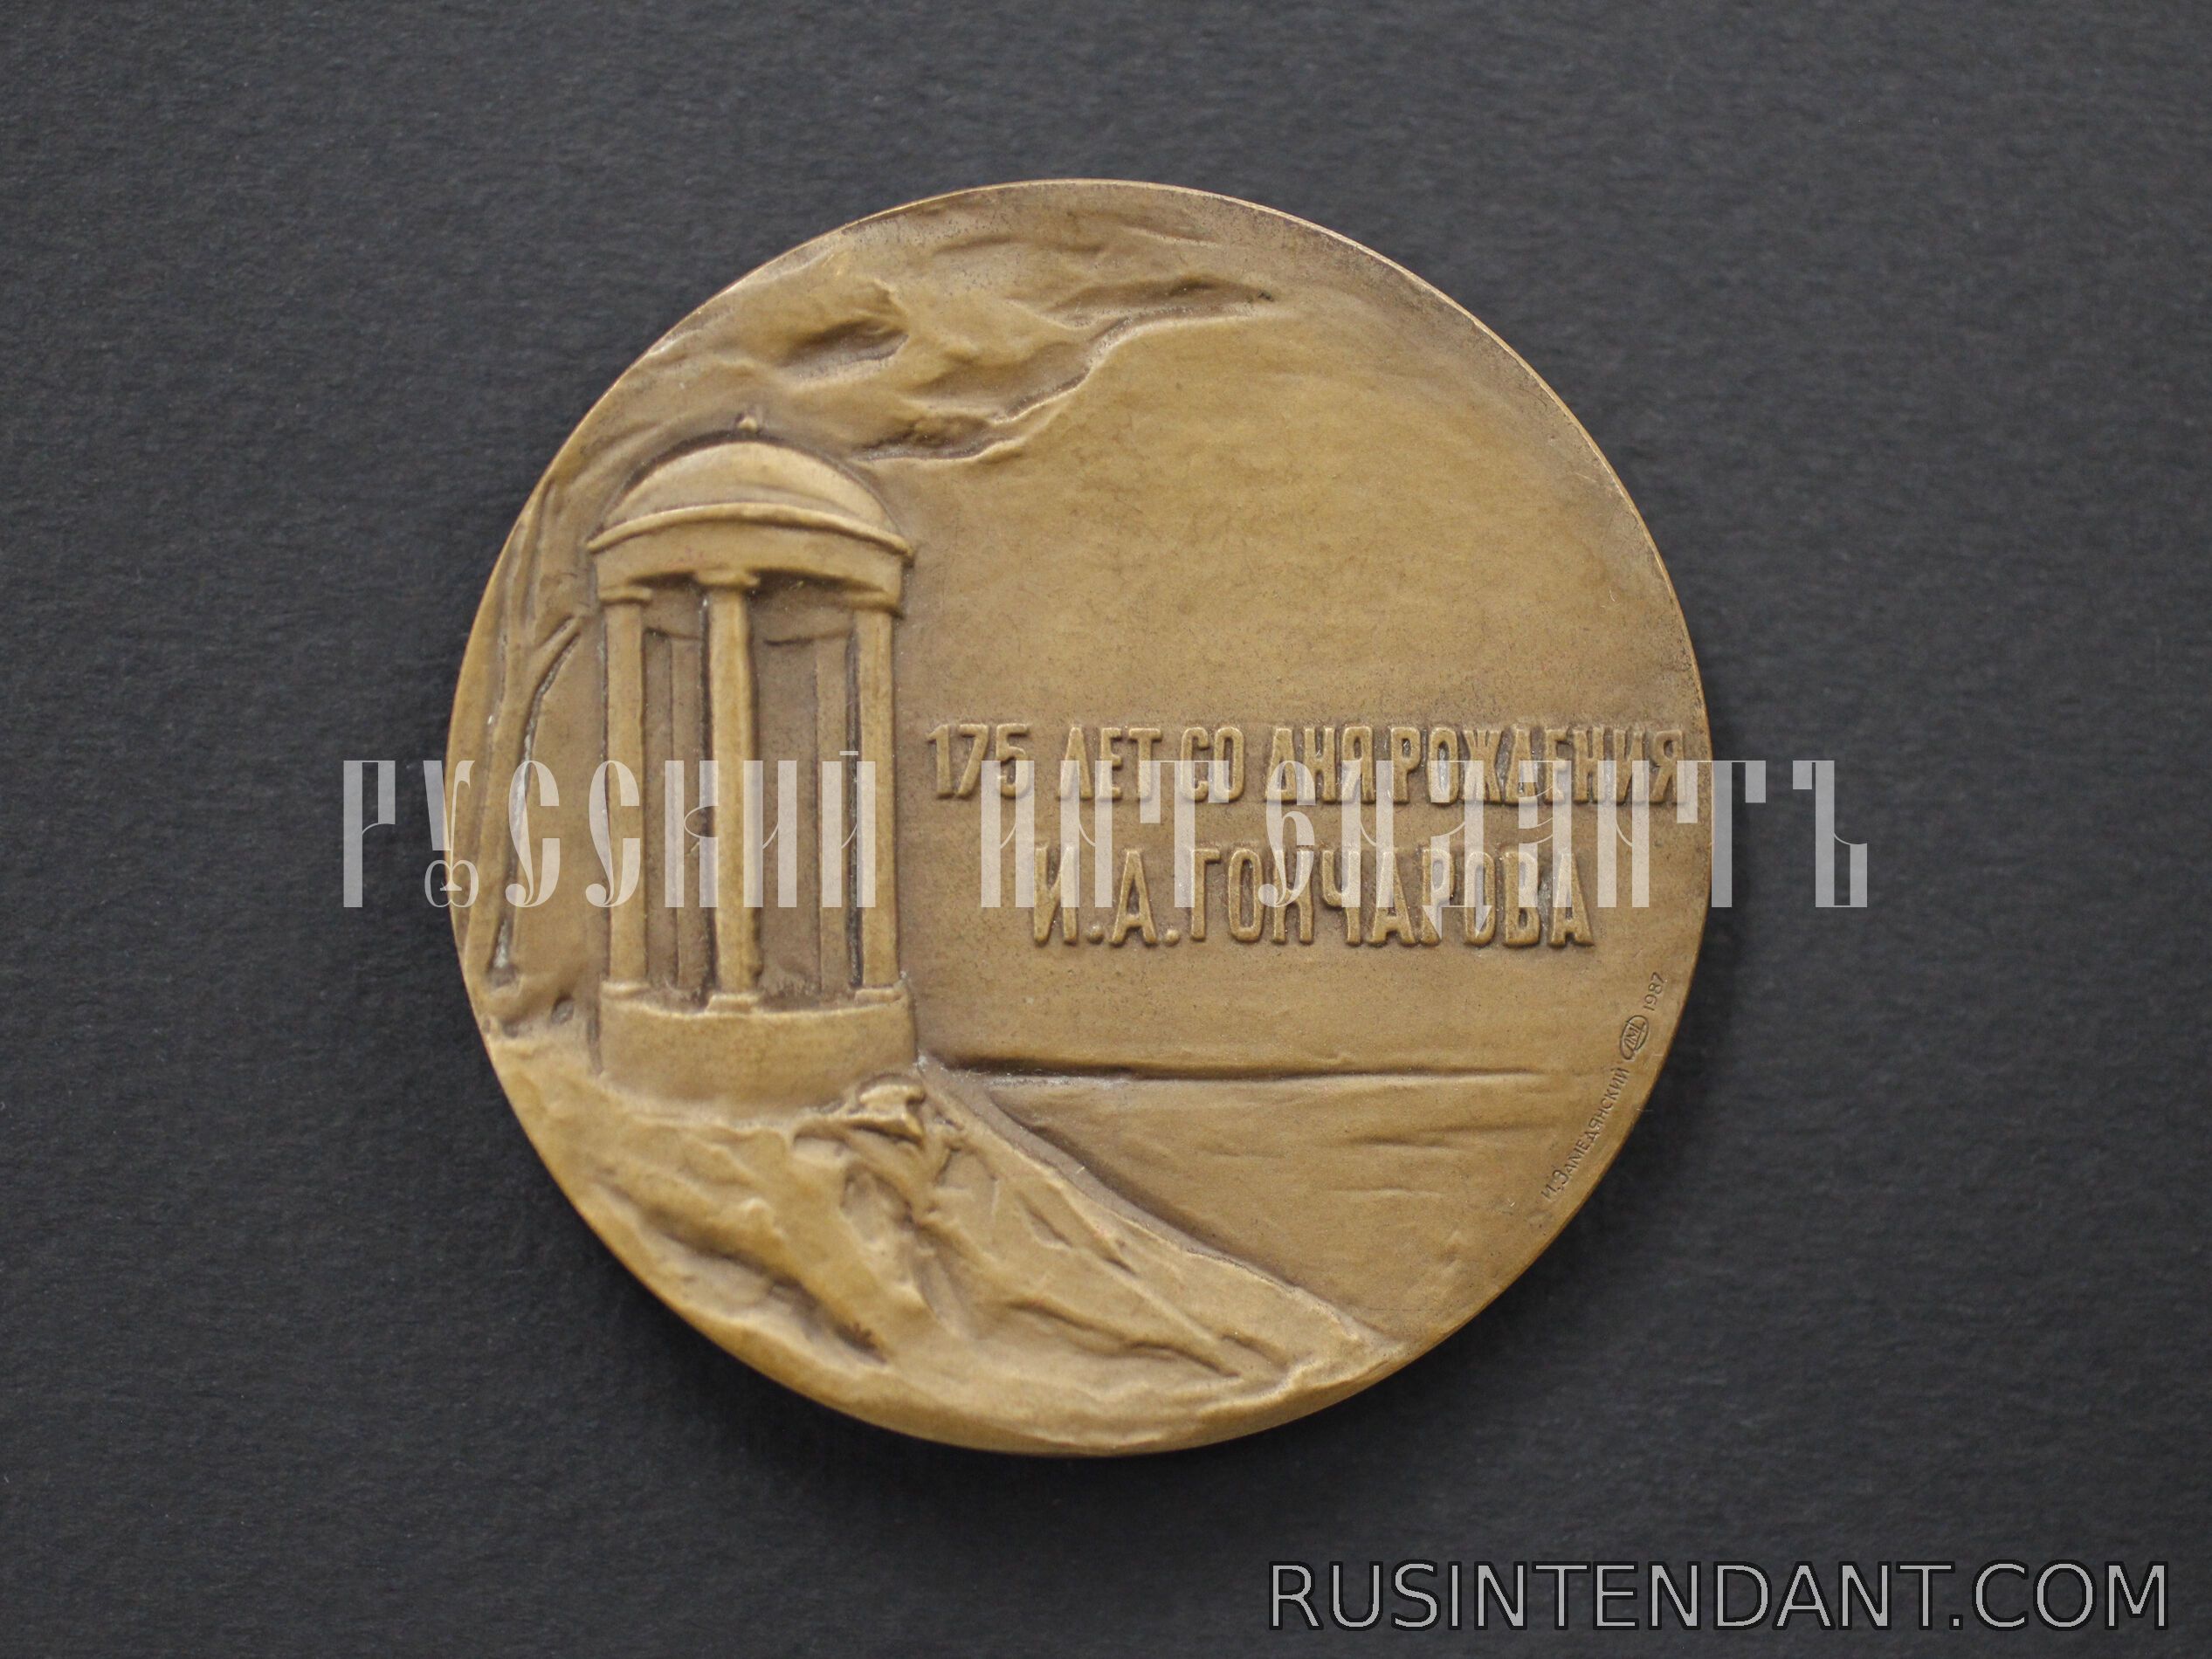 Фото 2: Настольная медаль «175 лет со дня рождения И.А. Гончарова» 